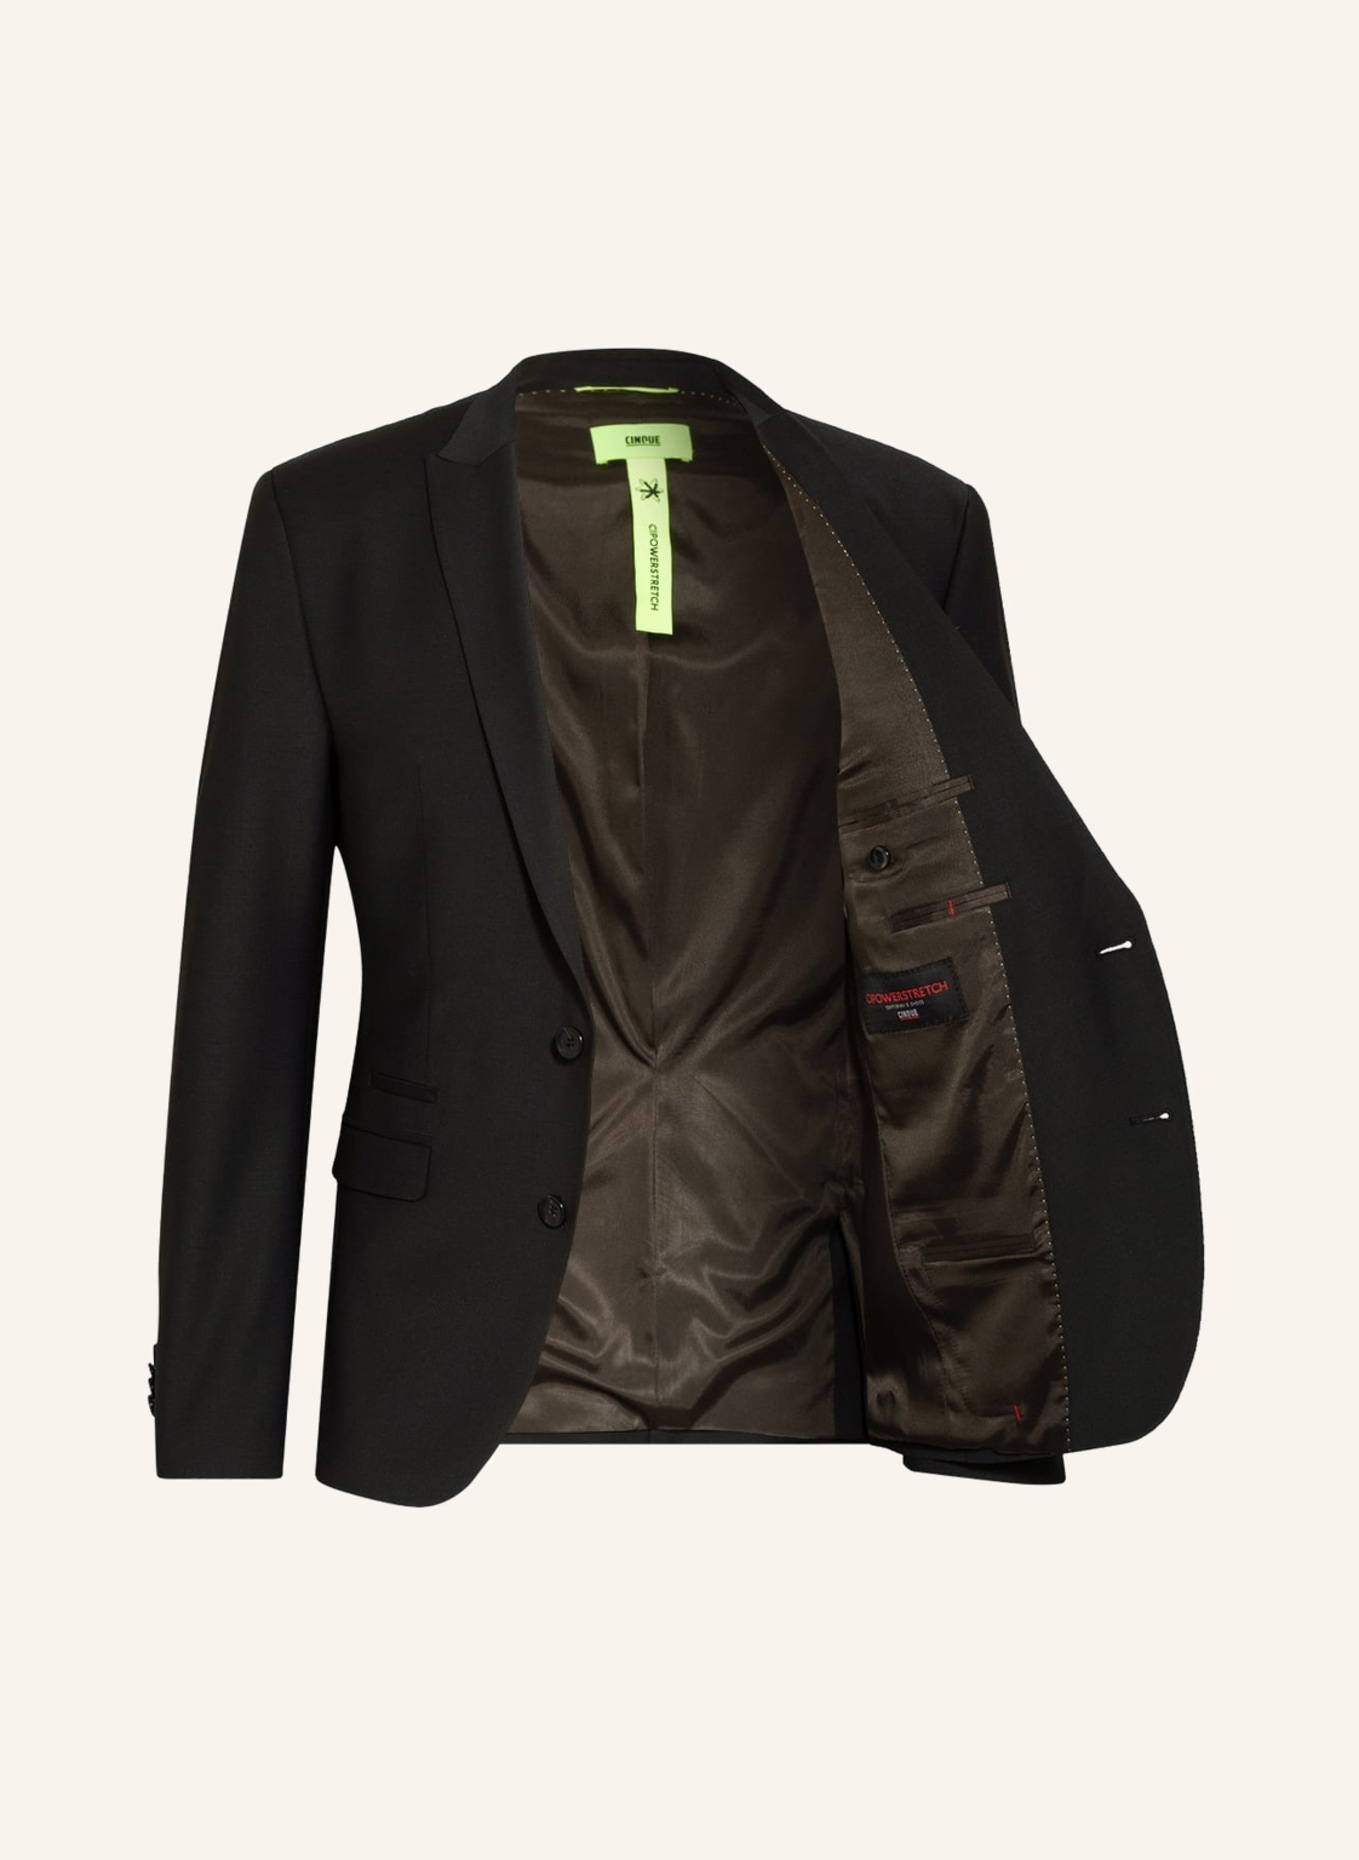 CINQUE Suit jacket CICASTELLO super slim fit, Color: 99 (Image 4)